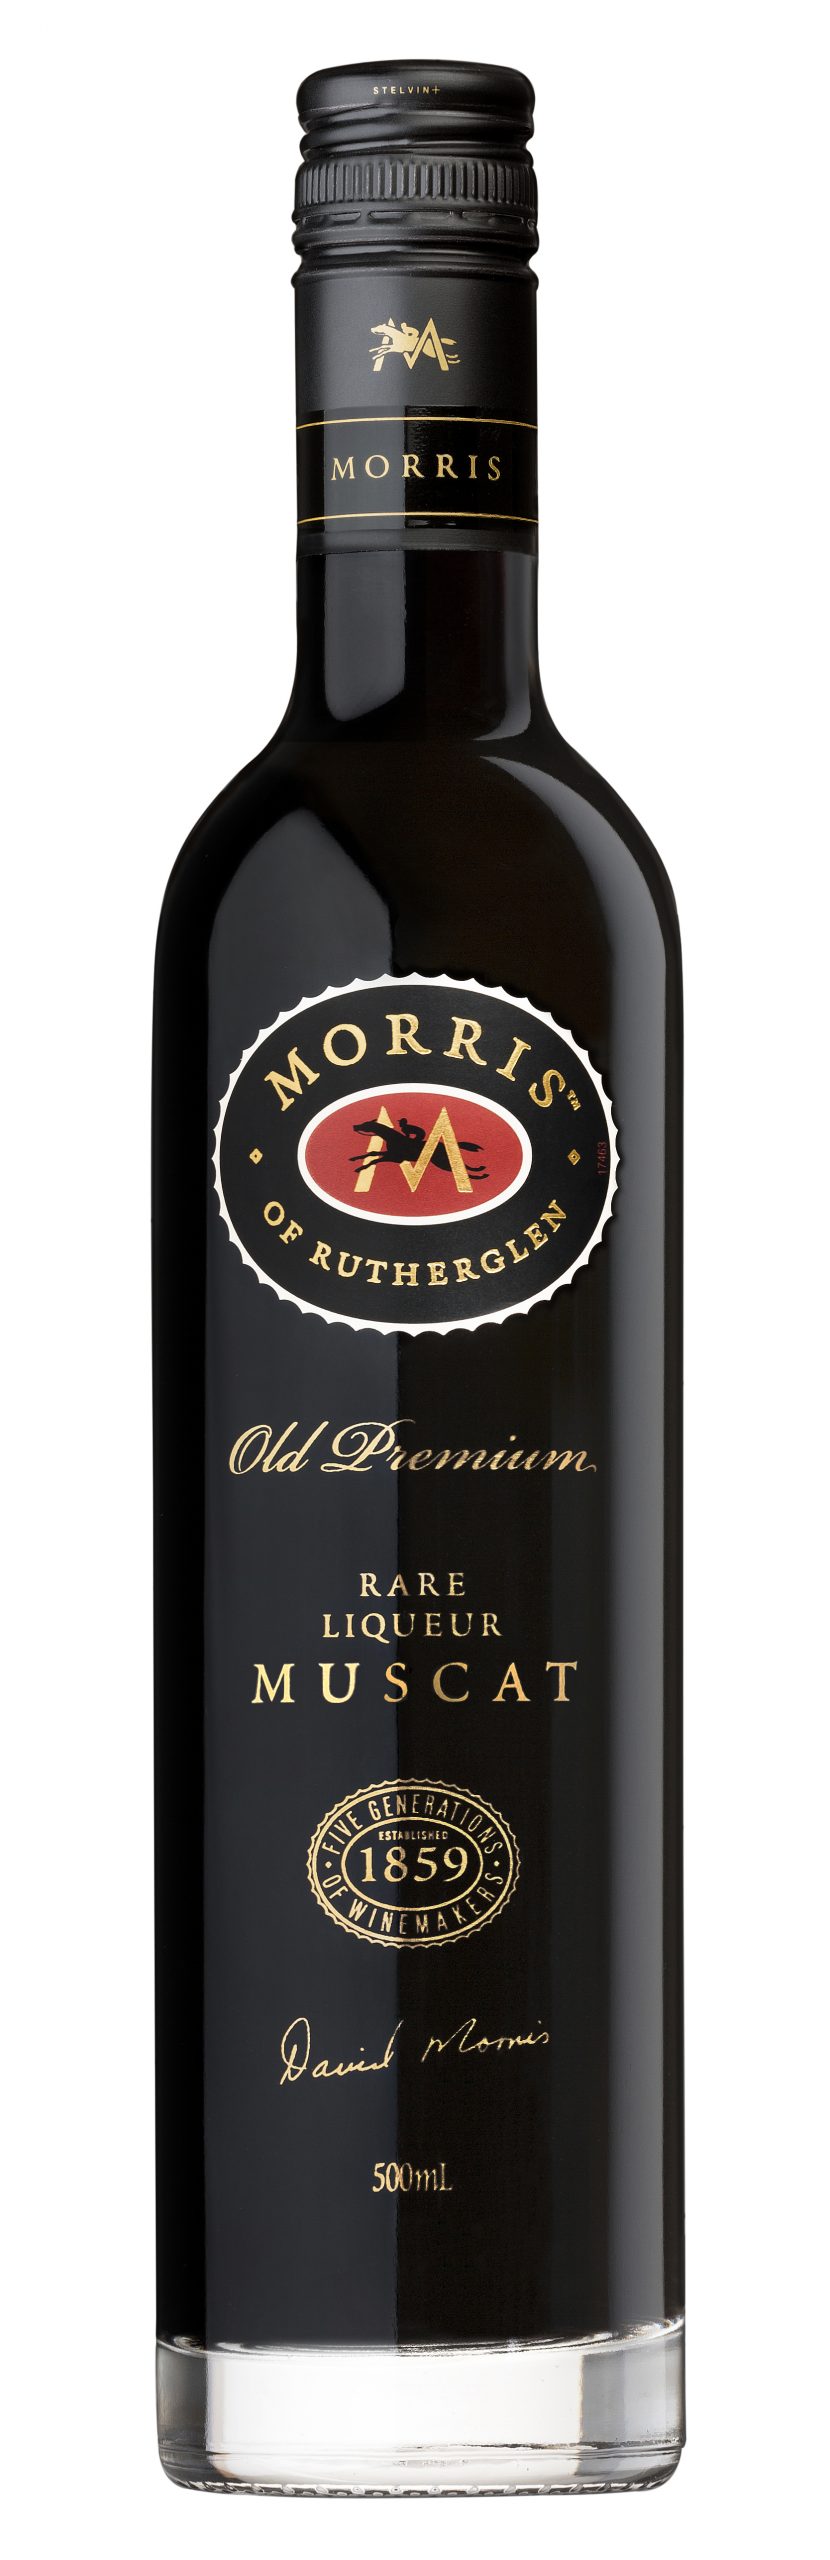 Old Premium Rare Liqueur Muscat